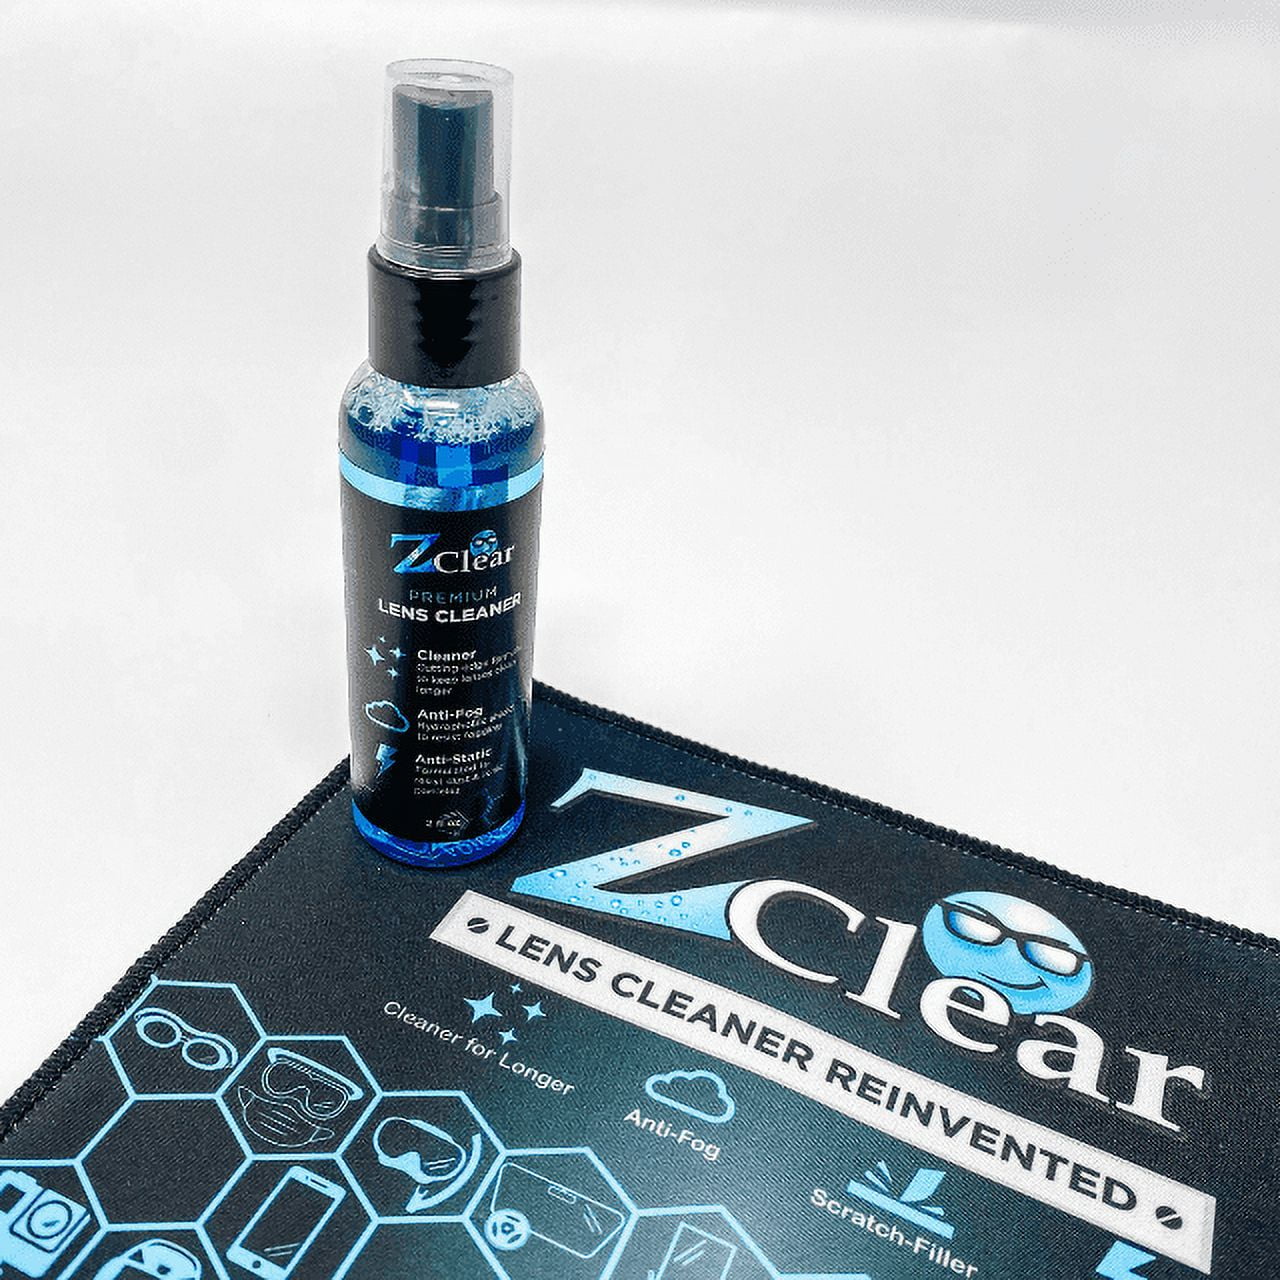 ZEISS Eye Glass Anti-Fog Wipes, Pre-Moistened Lens Cleaner Wipes